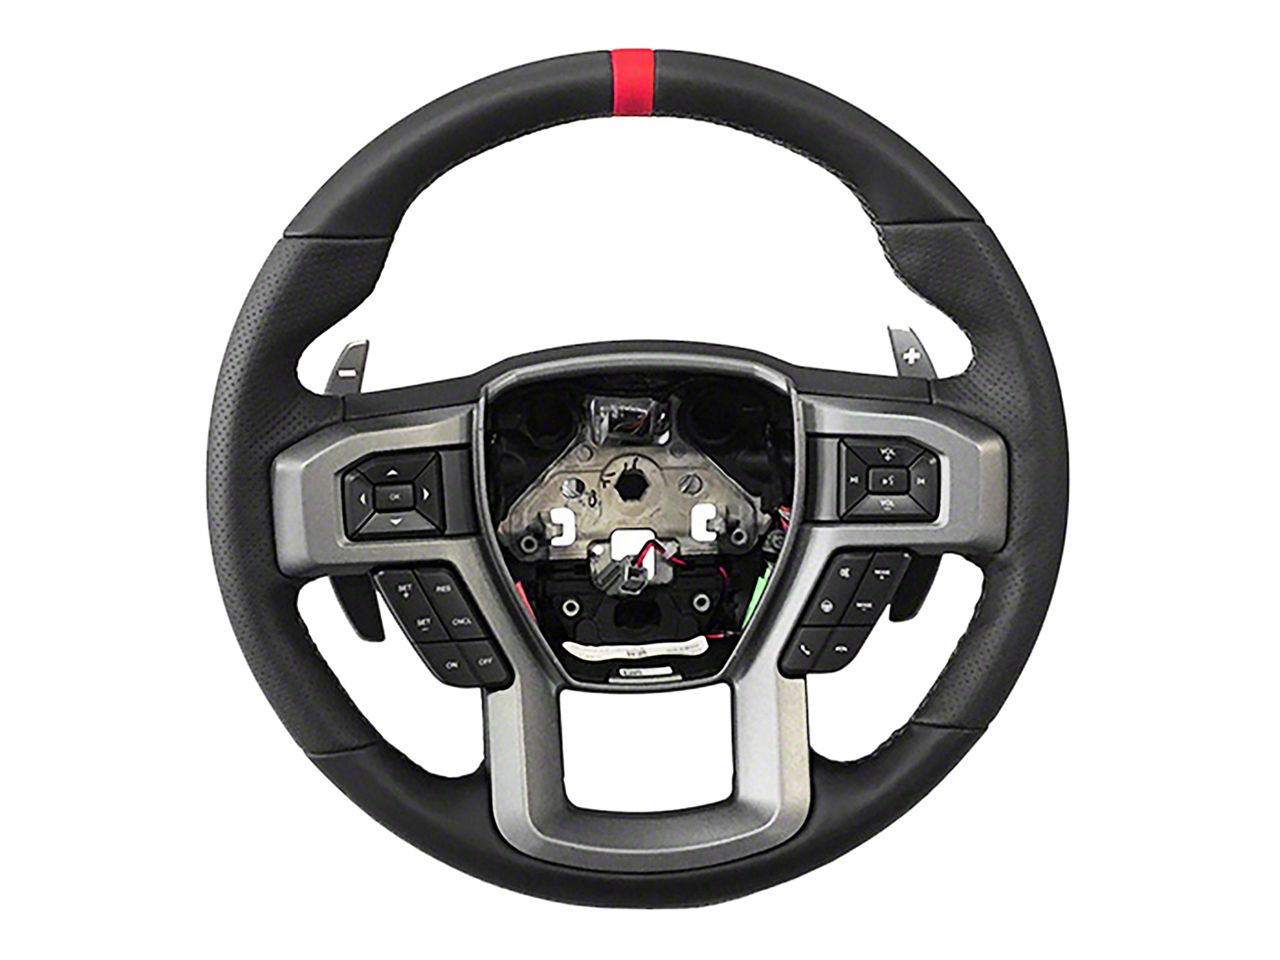 Ram3500 Steering Wheels & Accessories 2010-2018